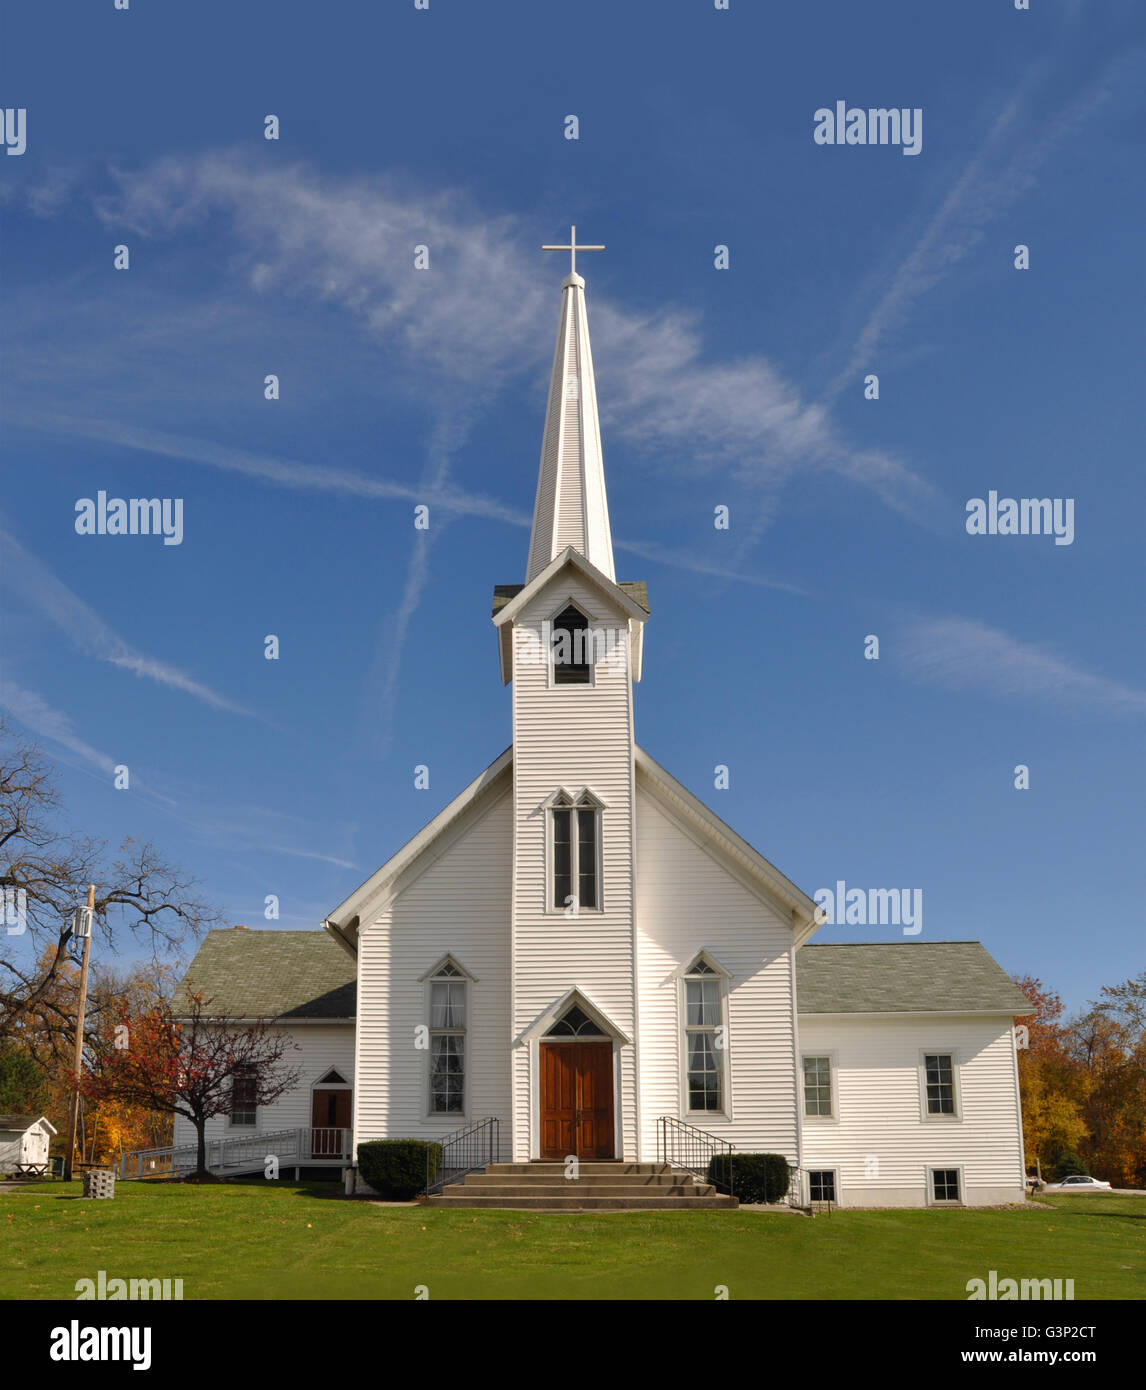 Rural Church, Midwest, Ohio, near Akron, USA Stock Photo